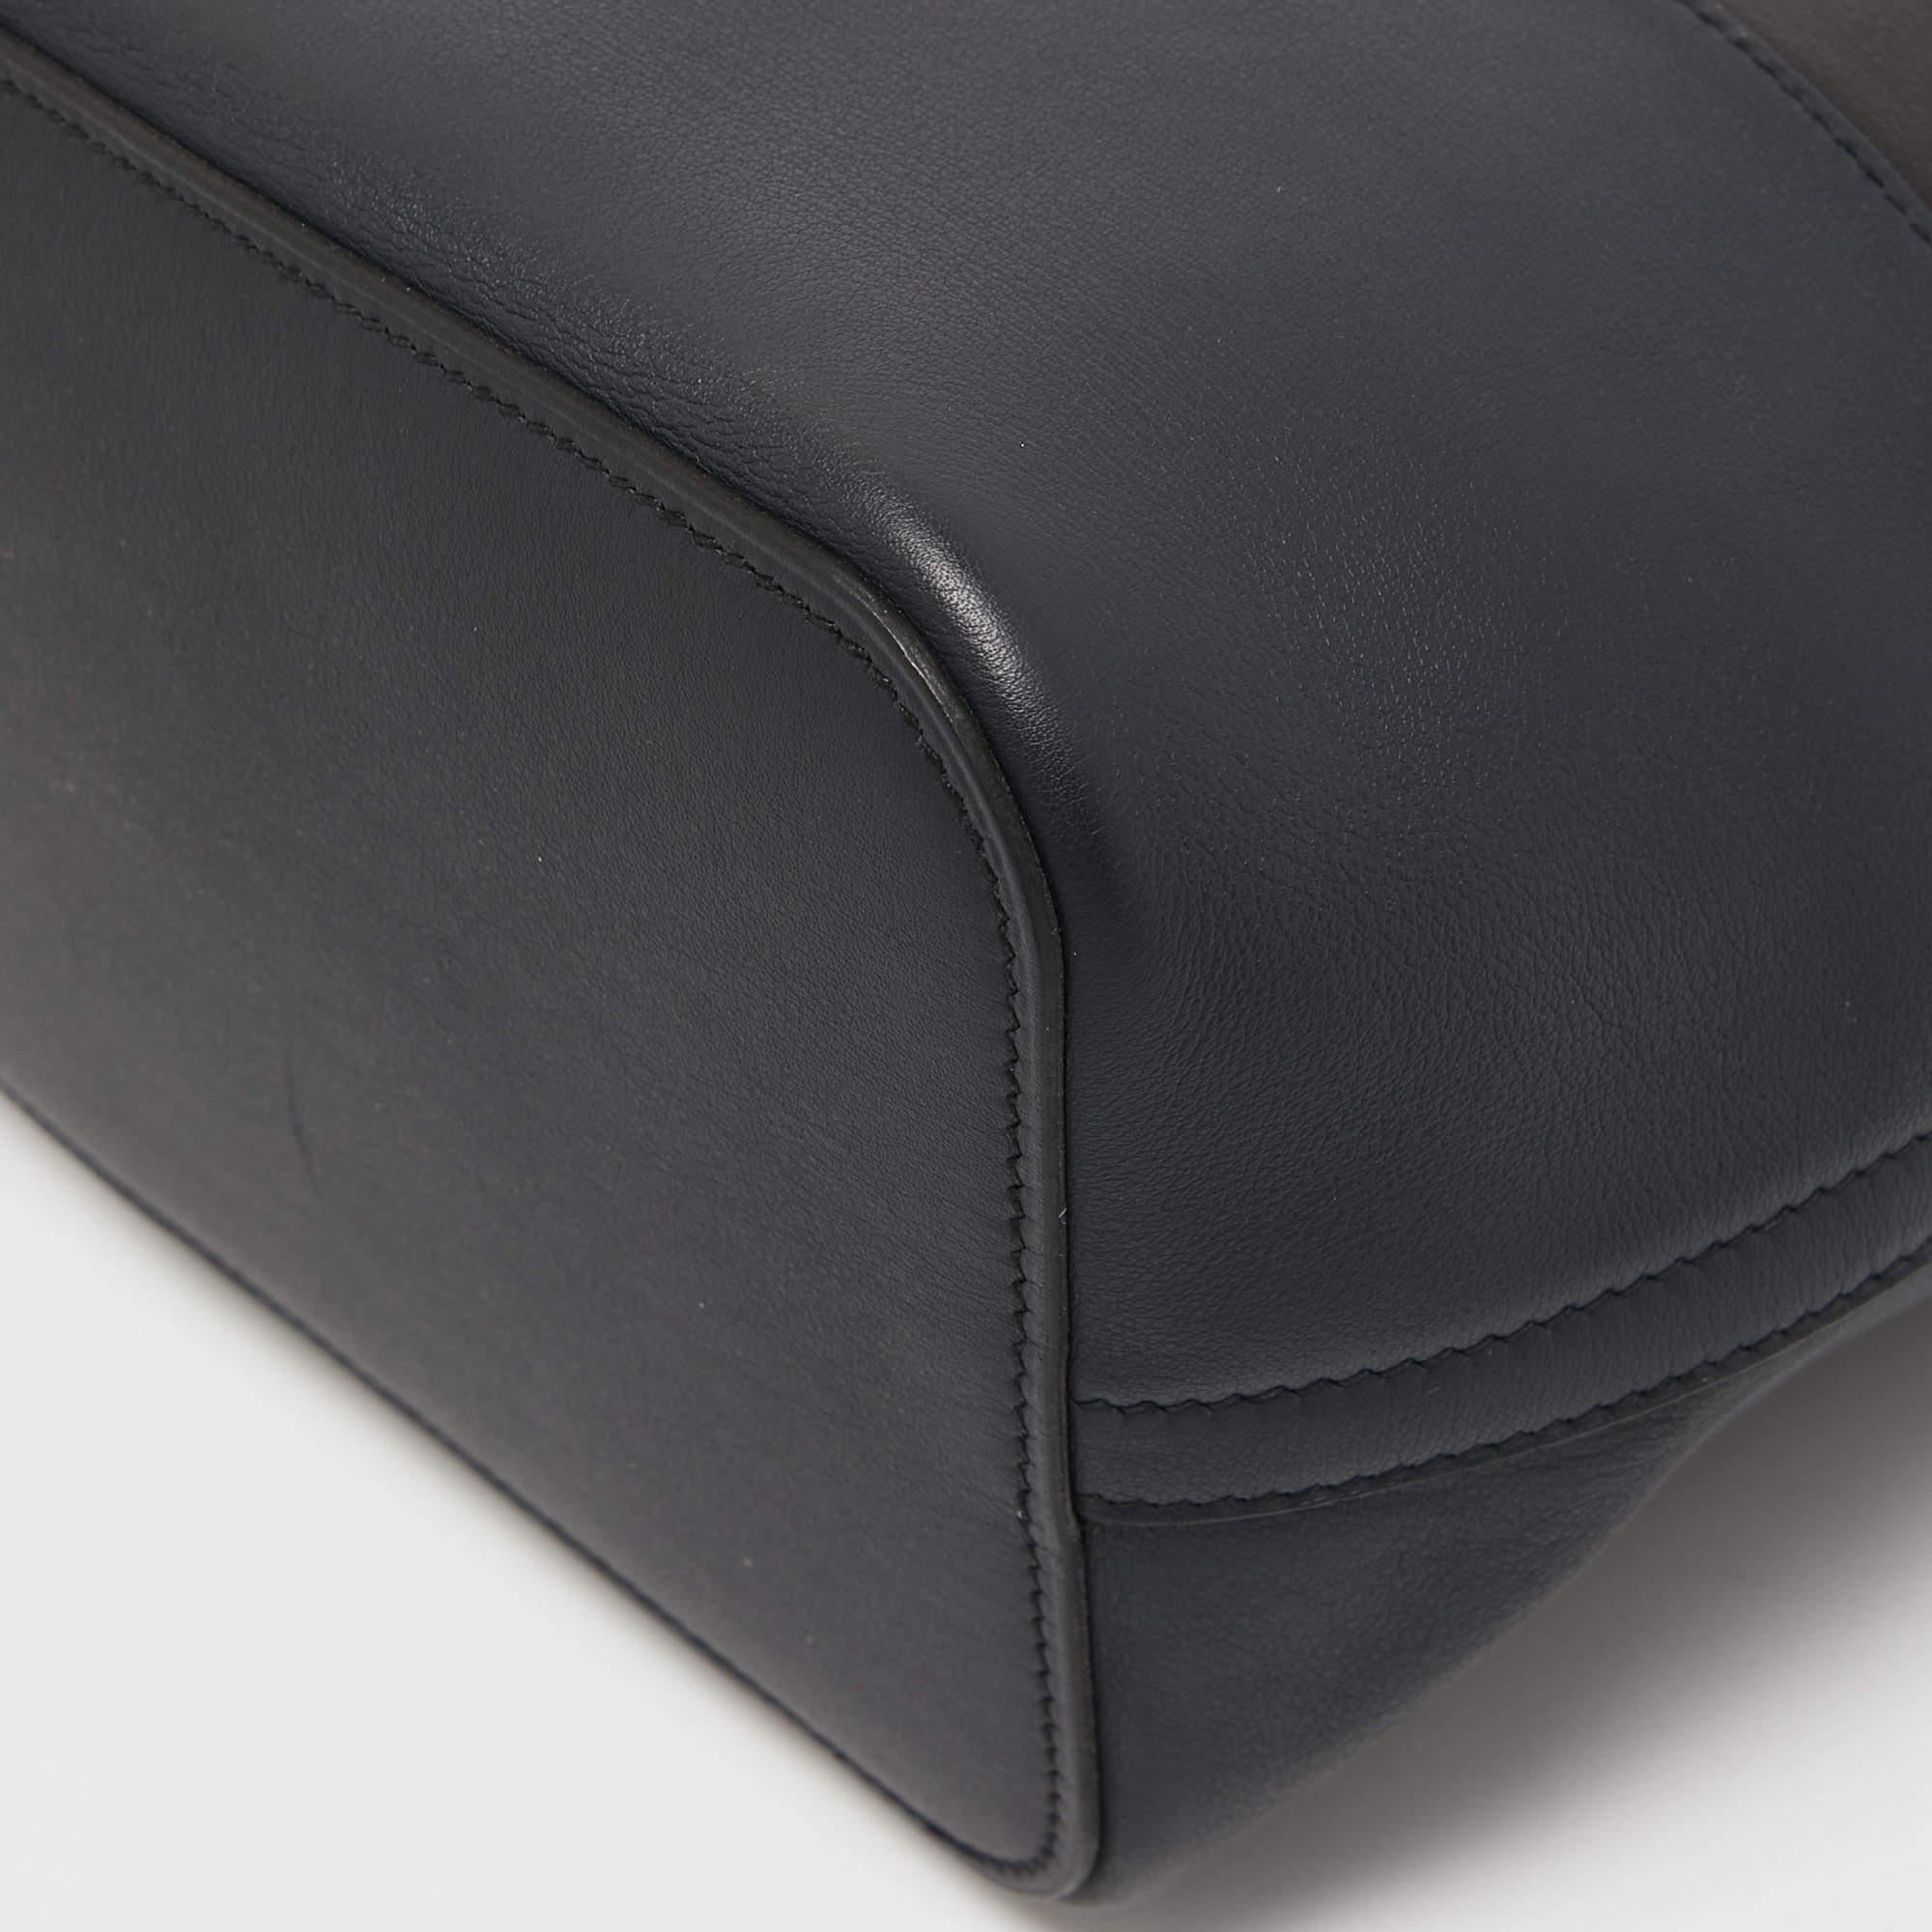 Hermes Black/Bleu Nuit/Rouge Evercolor and Swift Leather Transat Sailor Bag For Sale 5